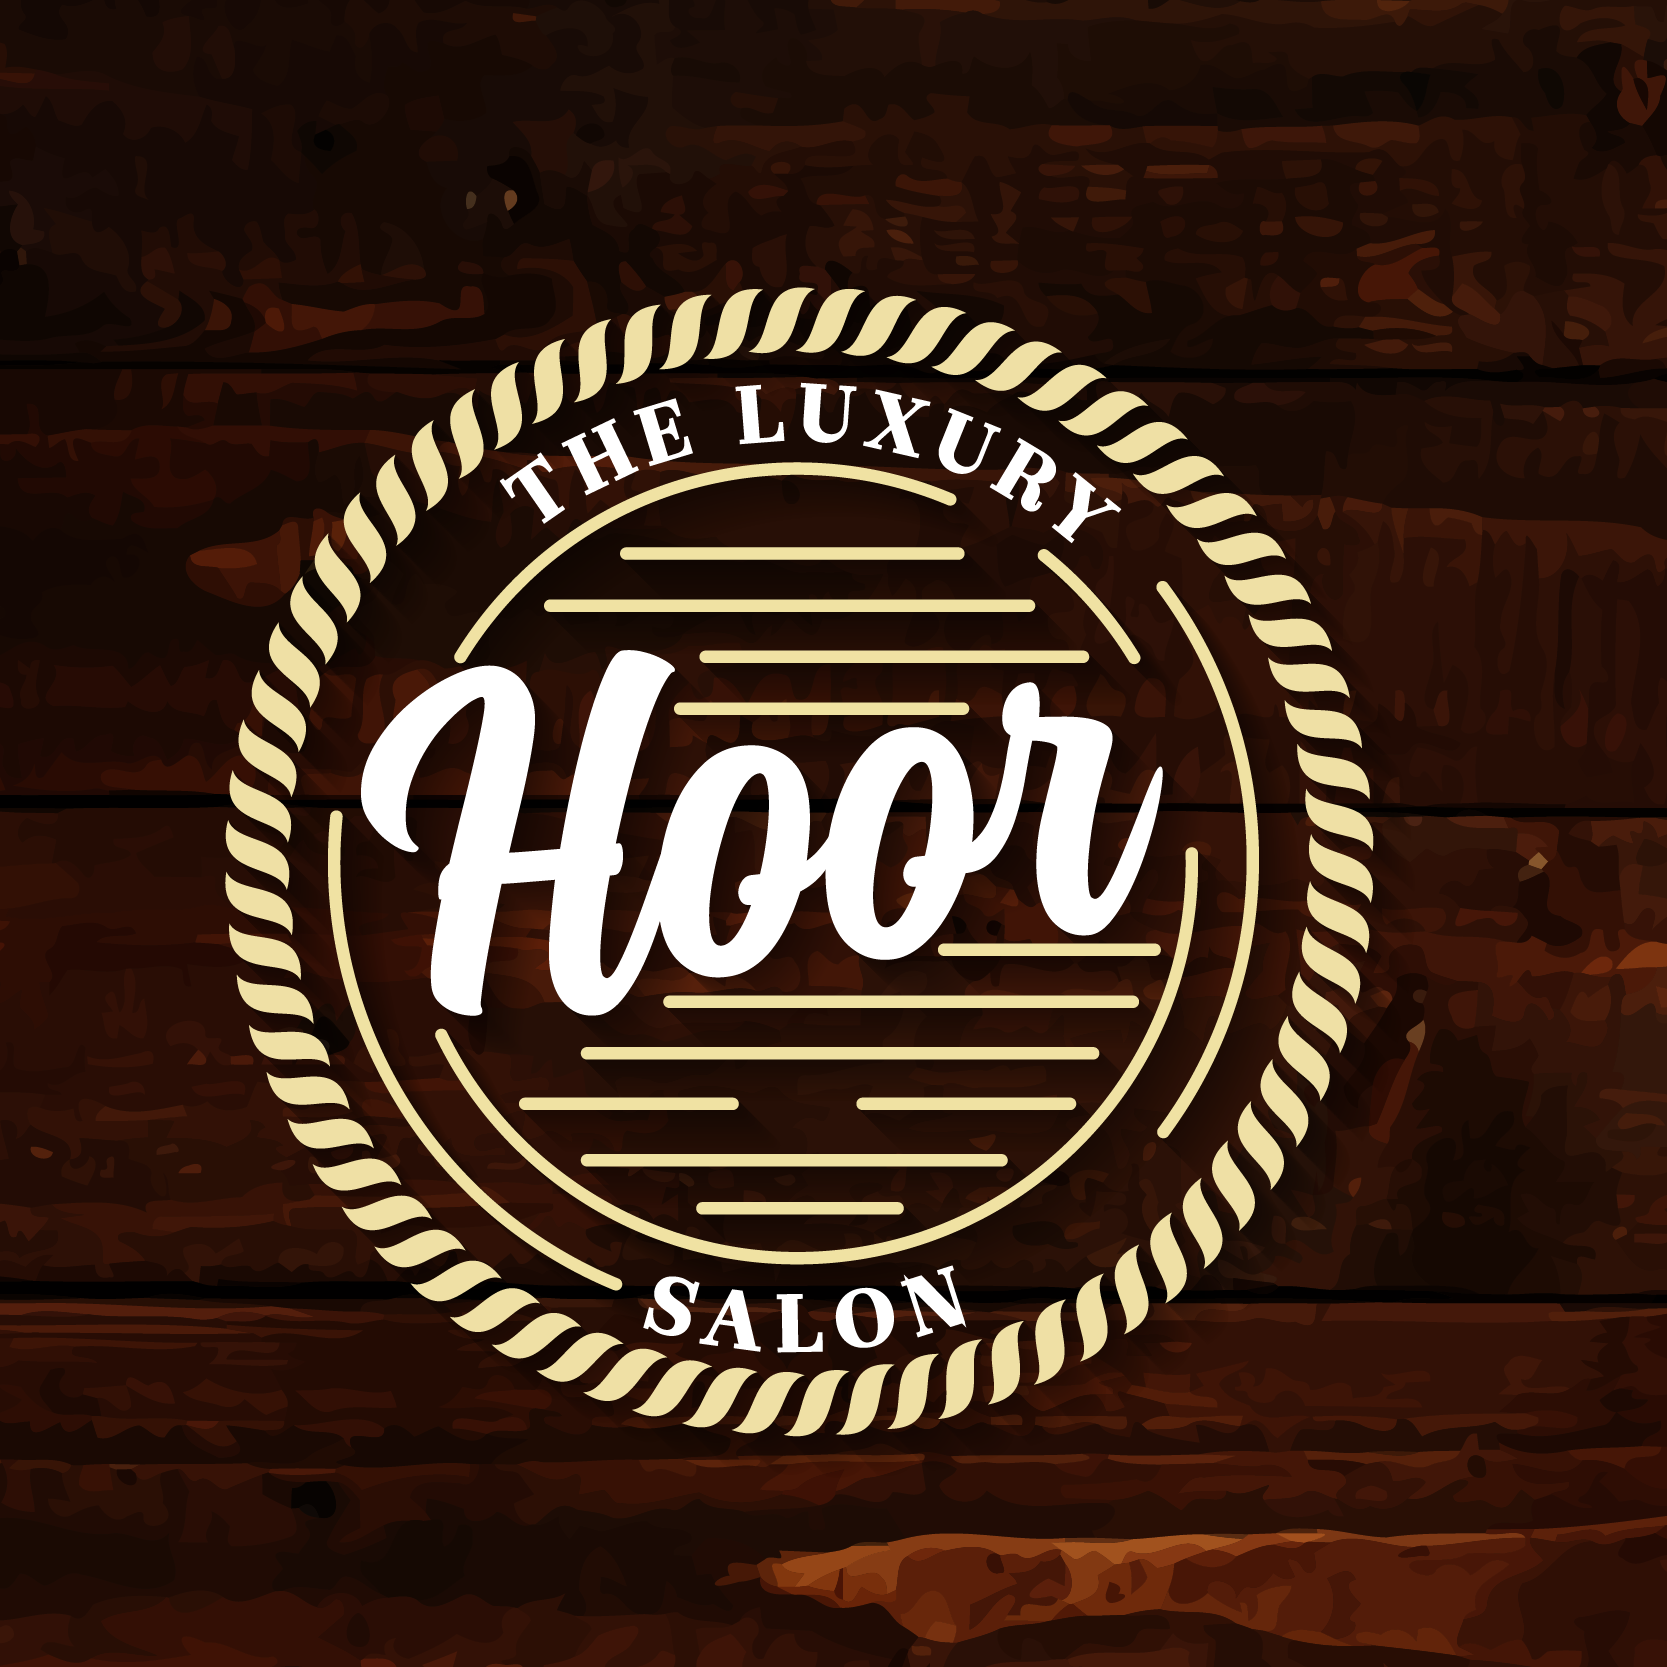 Hoor Luxury Salon|Salon|Active Life